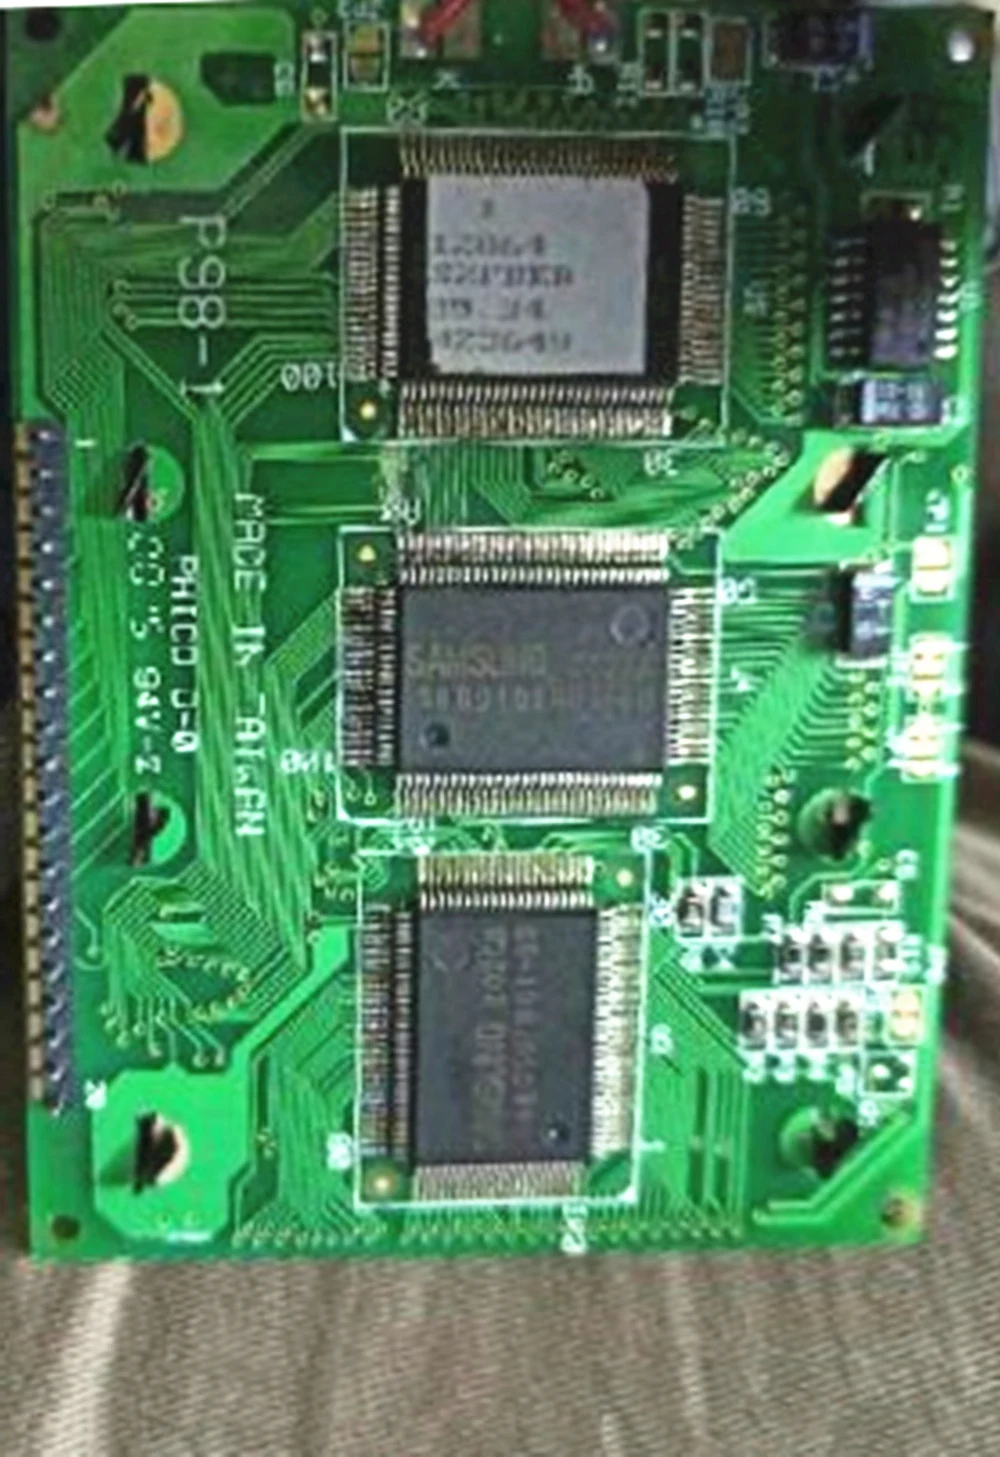 ЖК-модуль для передачи данных S1FBLY-H P98-4A P98-1 Phico D-0 Новое промышленное устройство